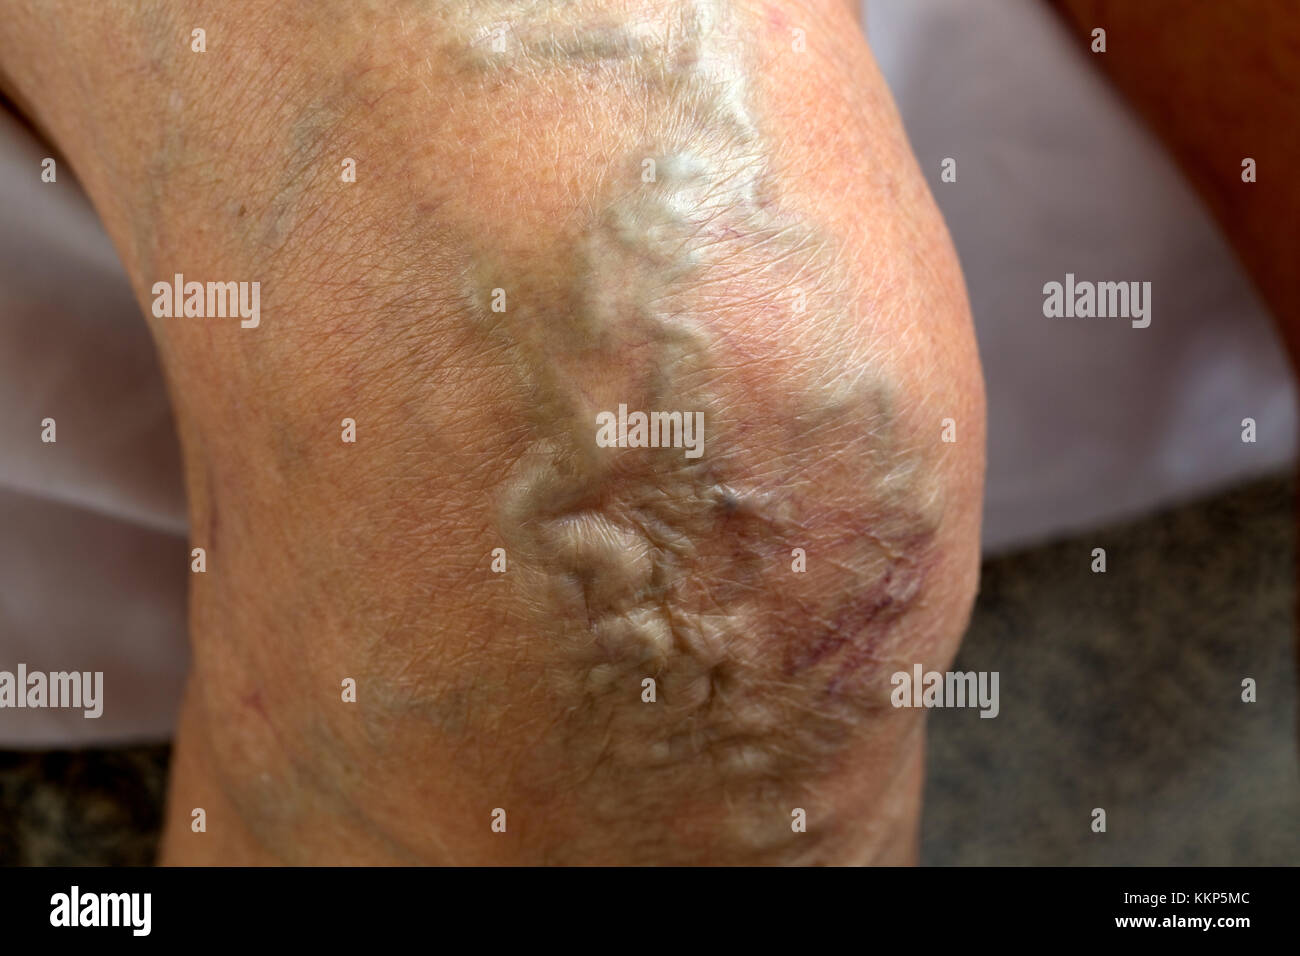 Enlarged swollen varicose veins in knee of elderly woman UK Stock Photo